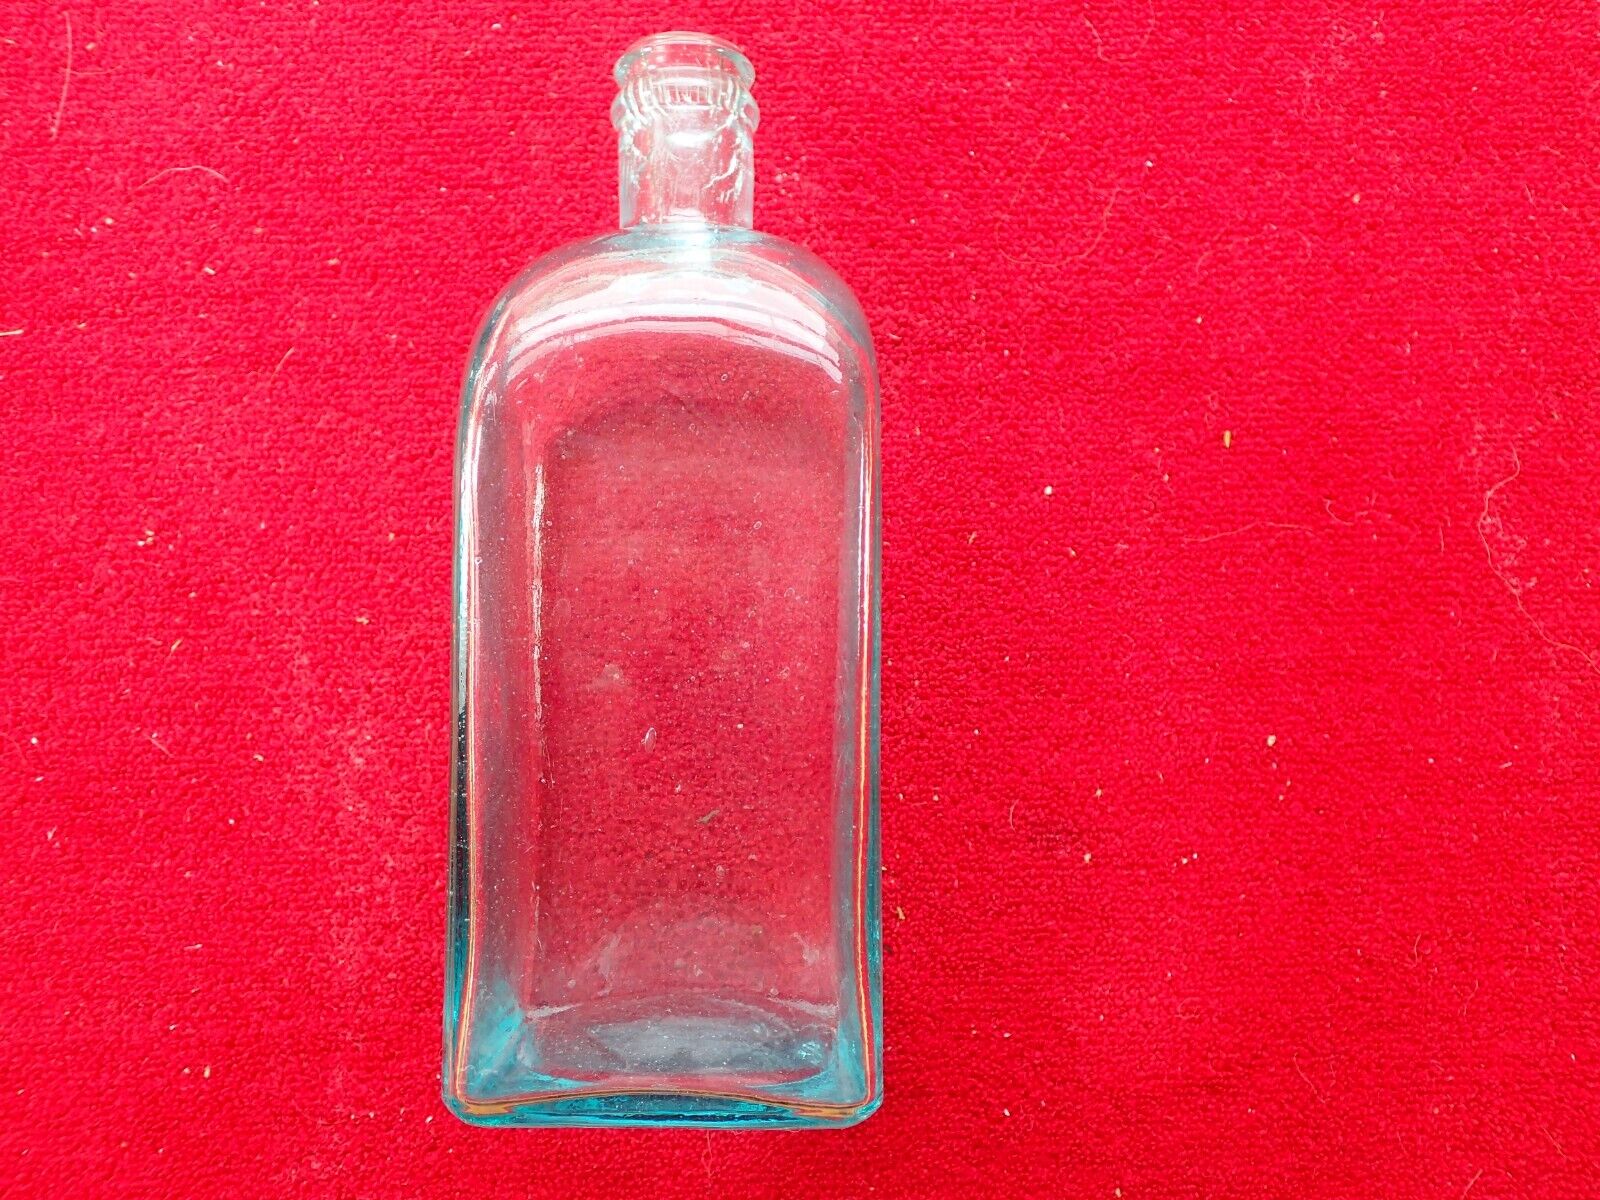 Vintage Rudolf Melka Teutonia Aromatischer Tonic Medicine Bottle Без бренда - фотография #2